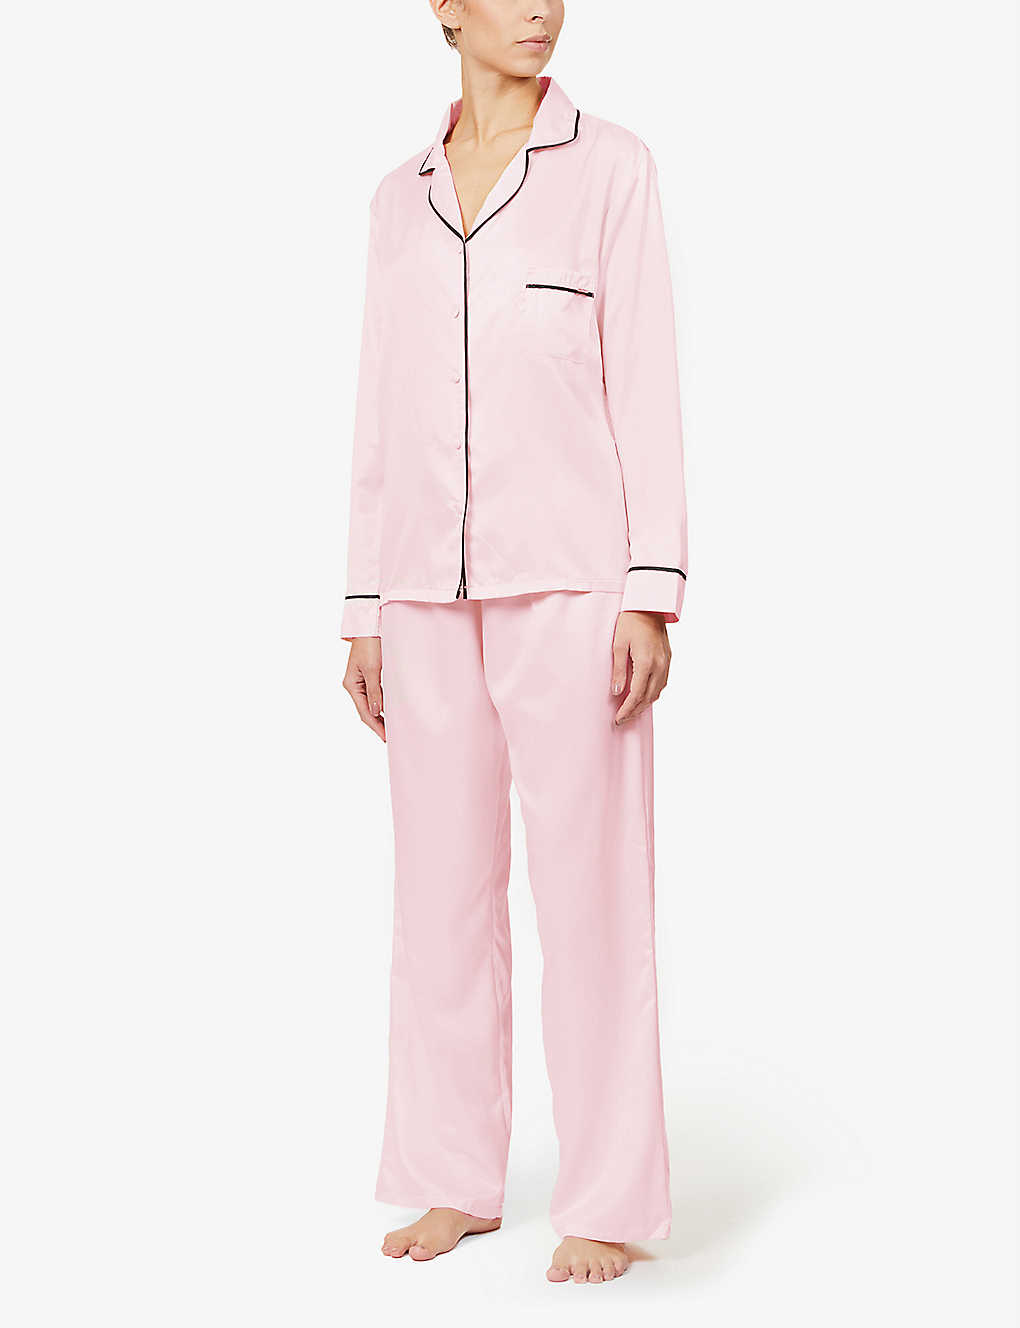 Bluebella Abigail Satin Pyjama Set In Pale Pink